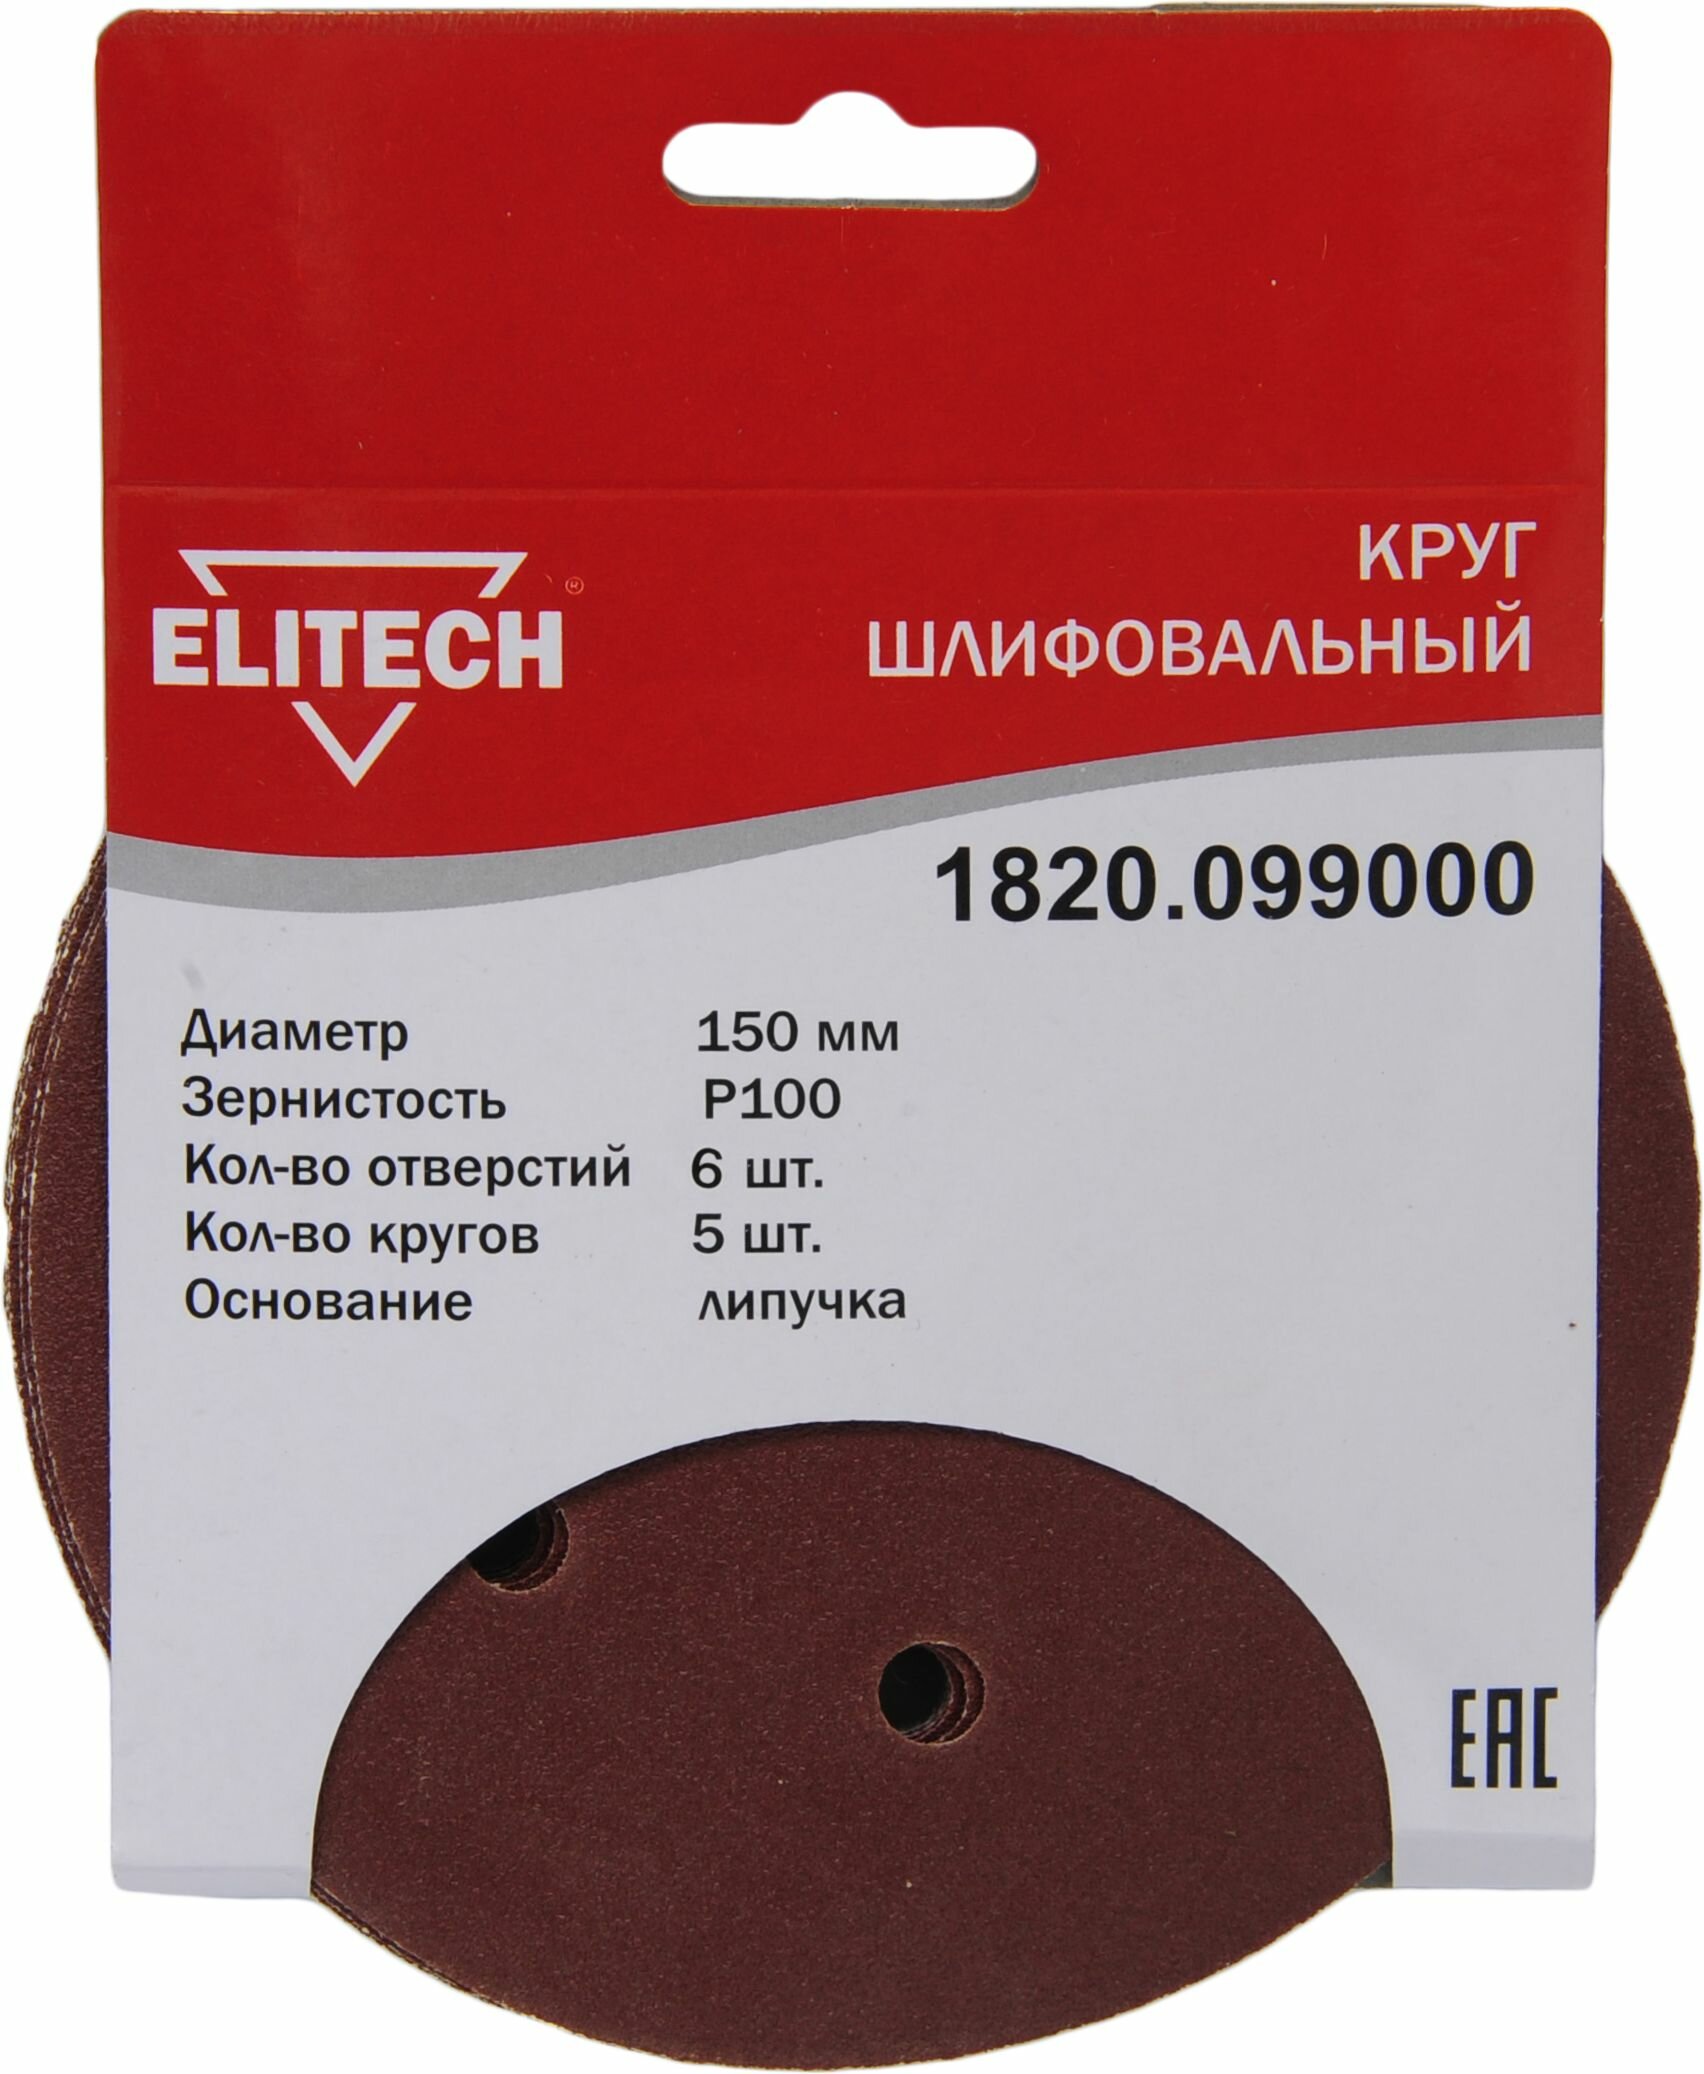 Круг шлифовальный ELITECH 1820.099000 150мм Р100 5шт